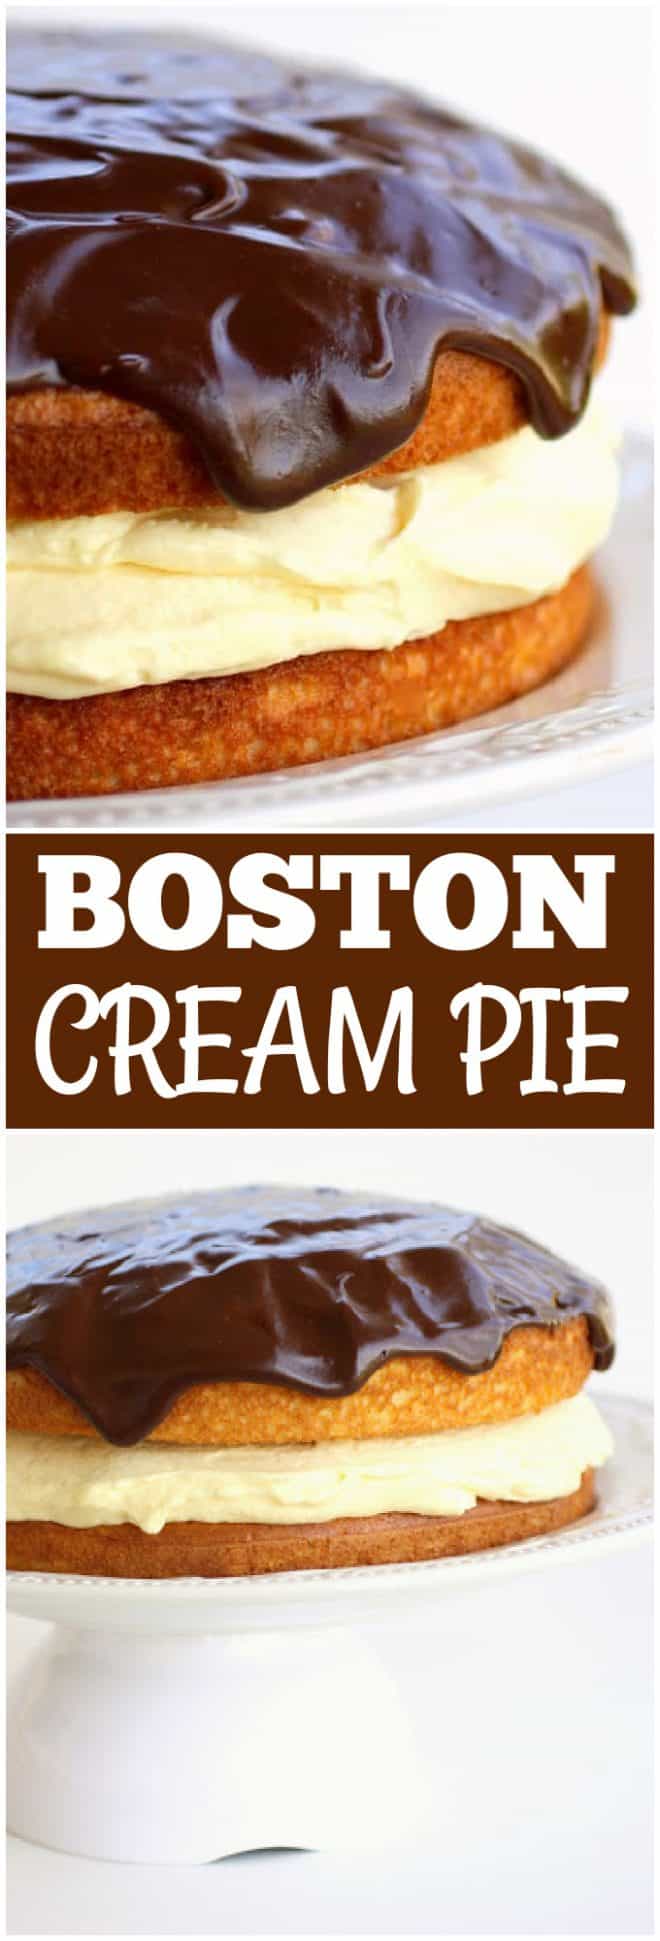 boston cream pie